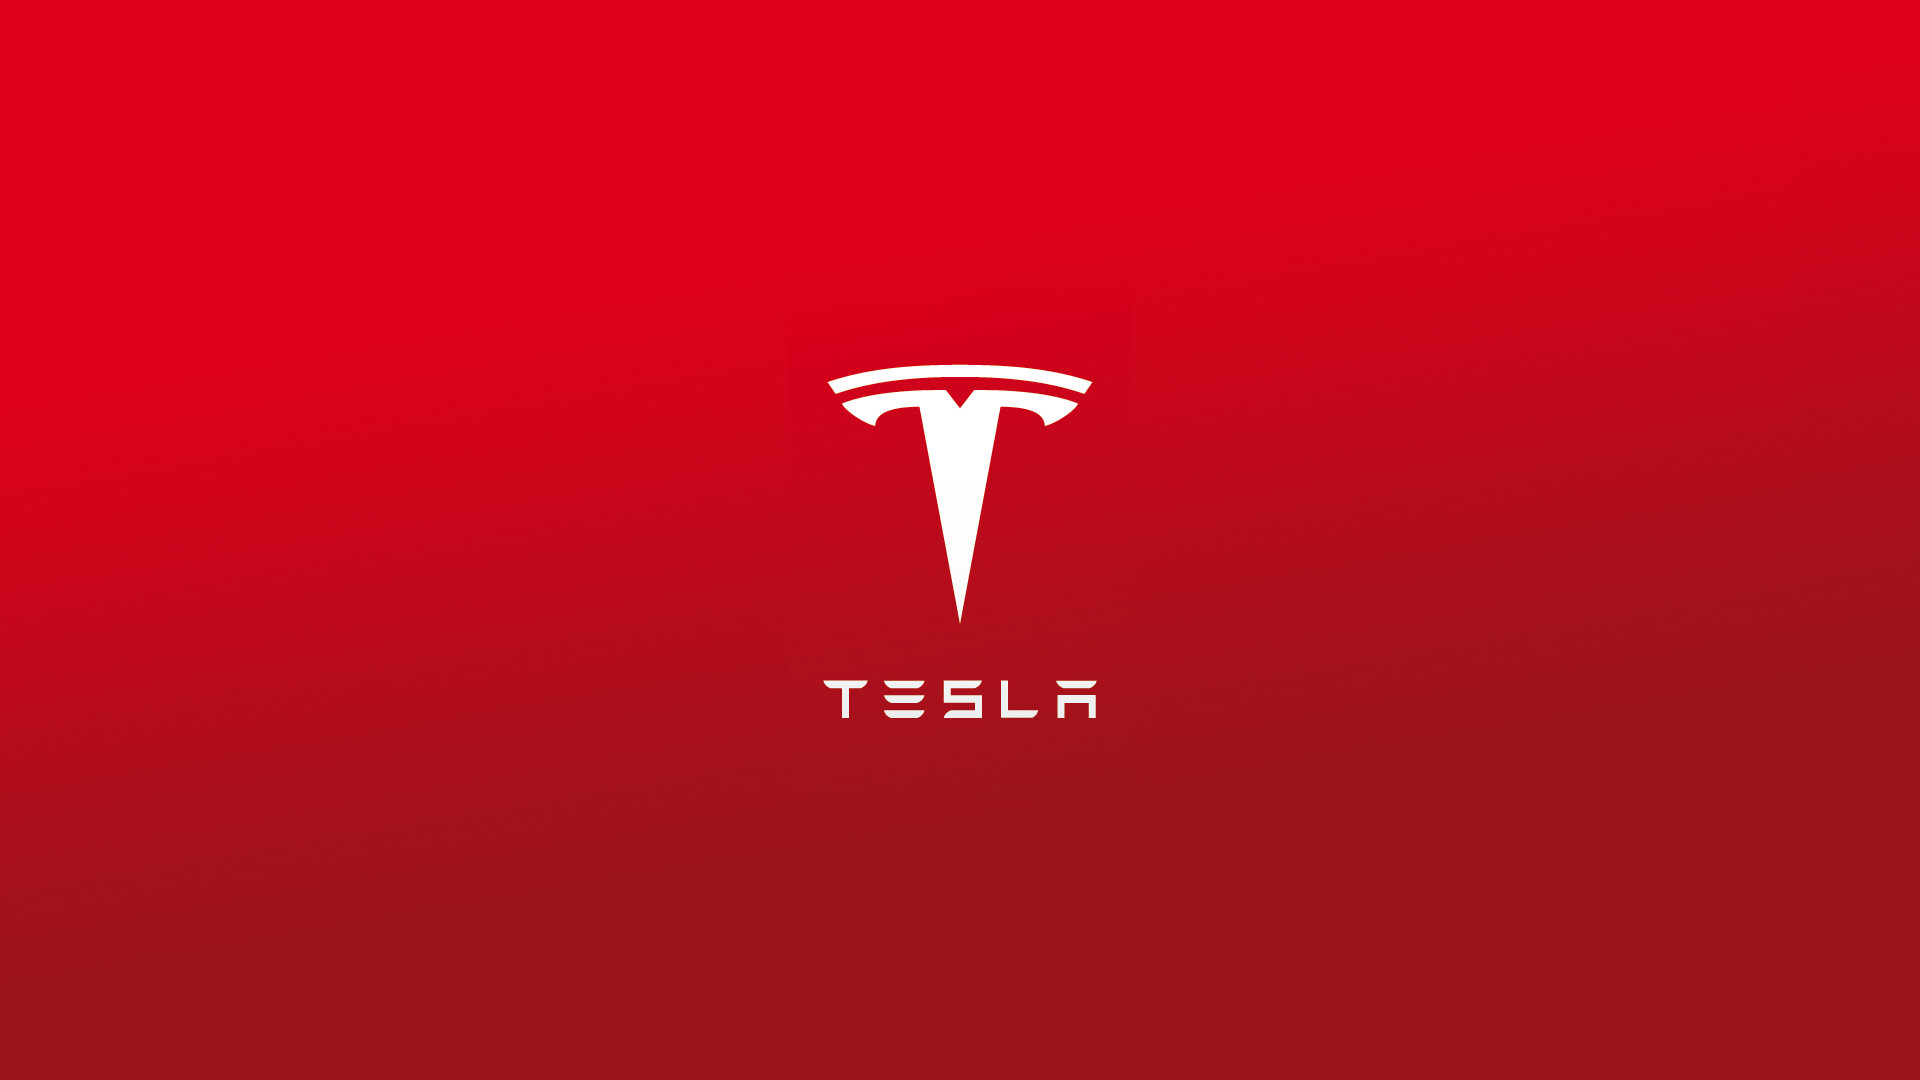 Tesla: EV manufacturer, Founded in 2003. 1920x1080 Full HD Background.